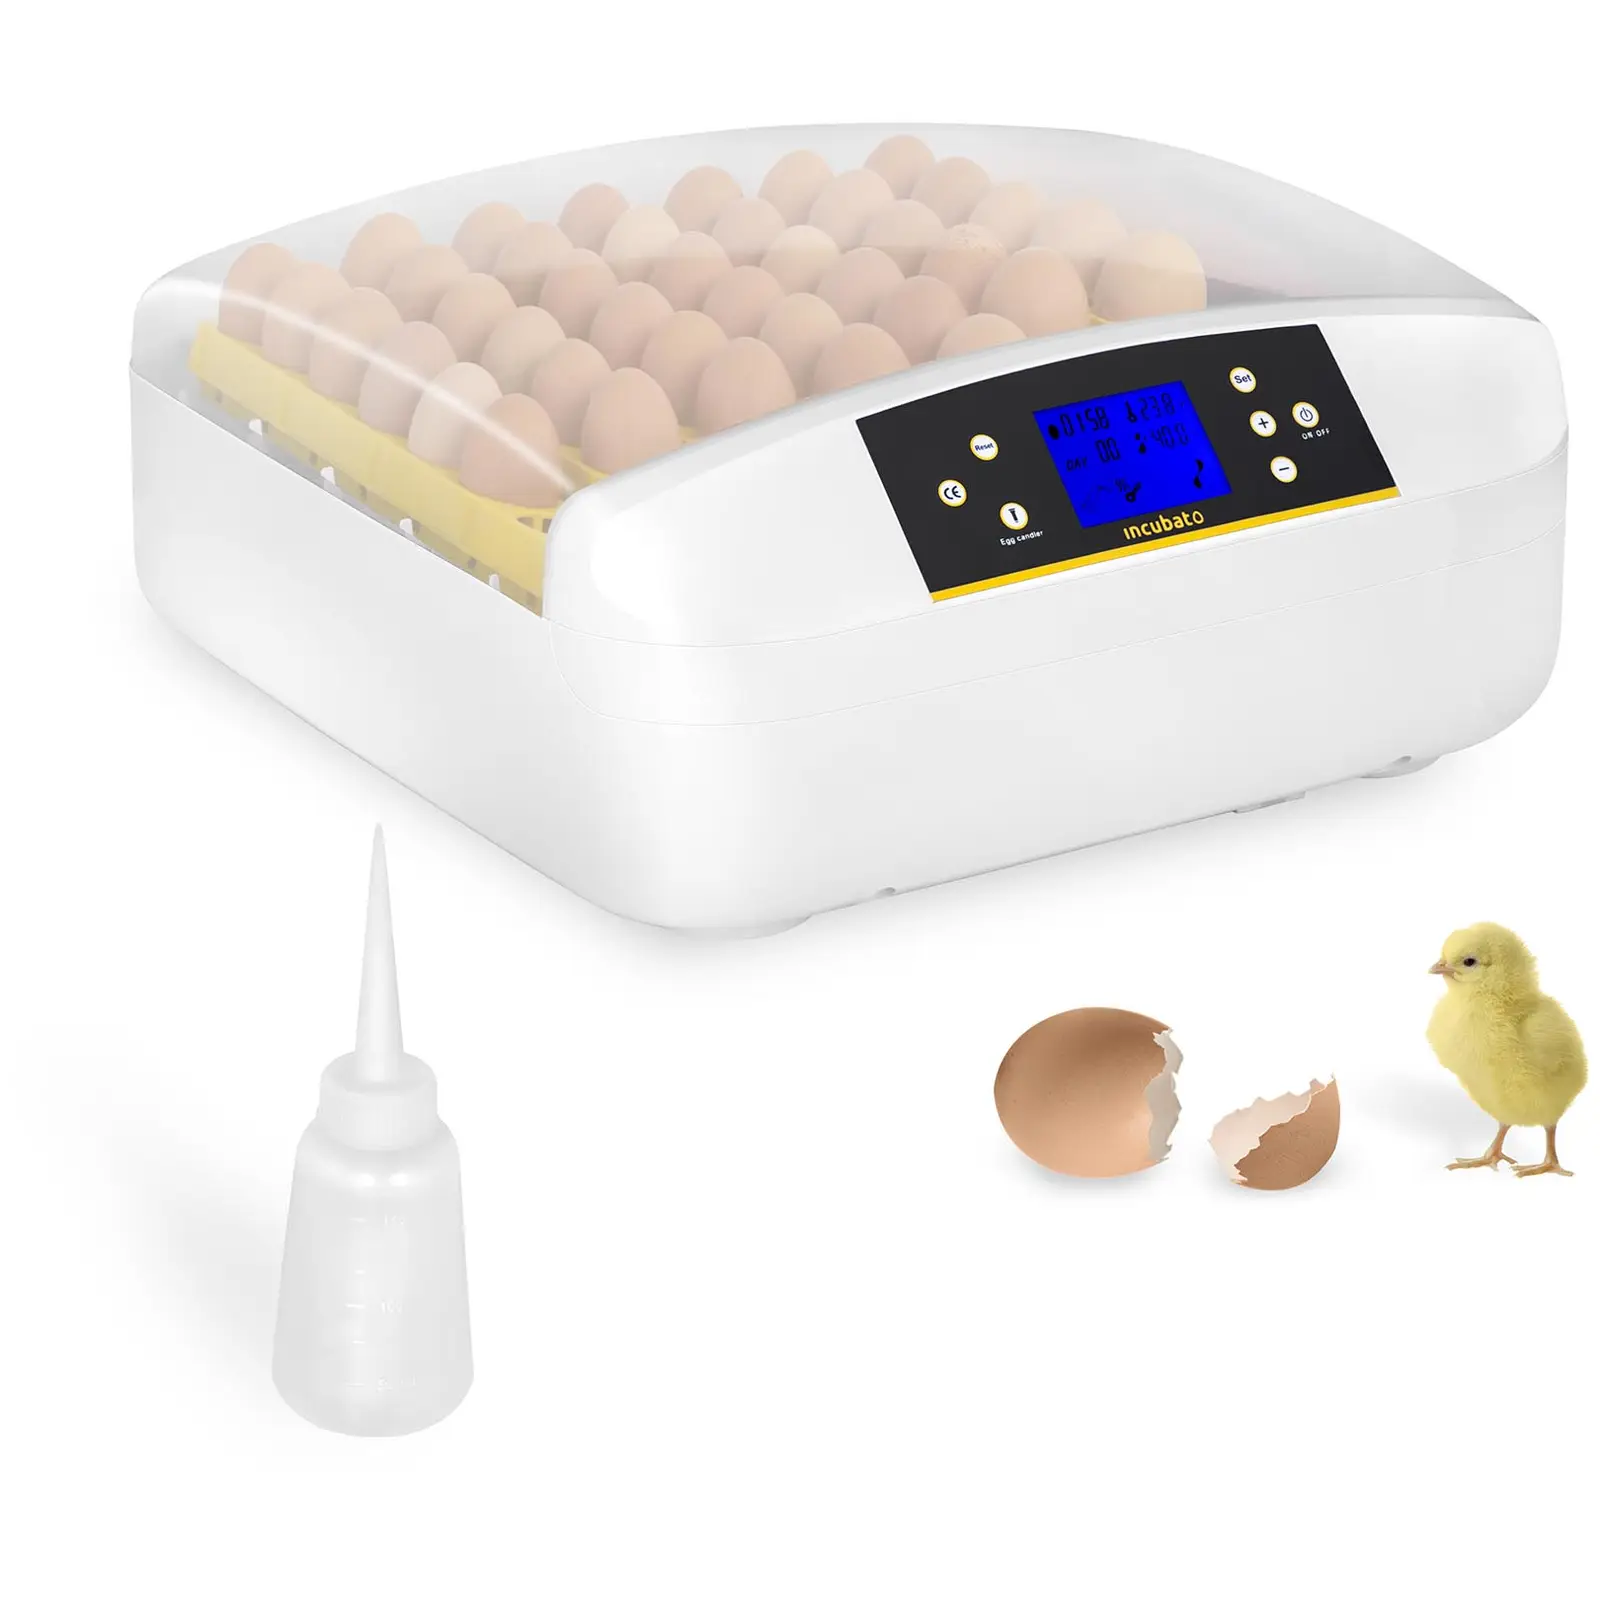 Caille Couveuse Automatique de 56 œufs de Poules ou Canards à Affichage Digital de la température Canard Incubateur Automatique Mini LED et contrôle de lhumidité pour Couver Poule 56 œufs 